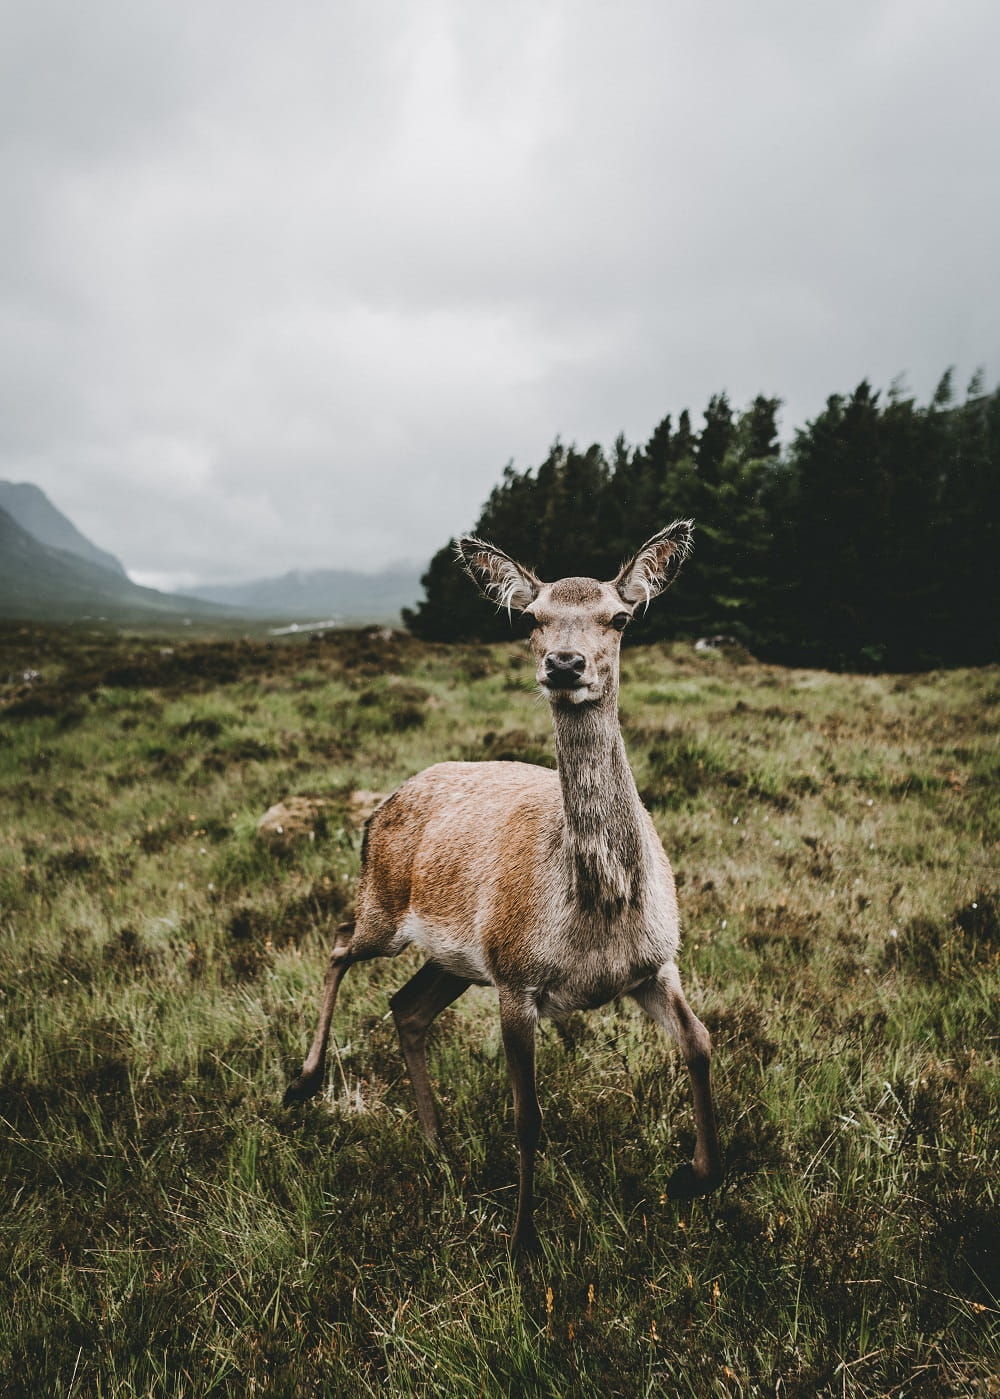 Photographer Hollie Harmsworth - Glencoe, Scottish Highlands, United Kingdom